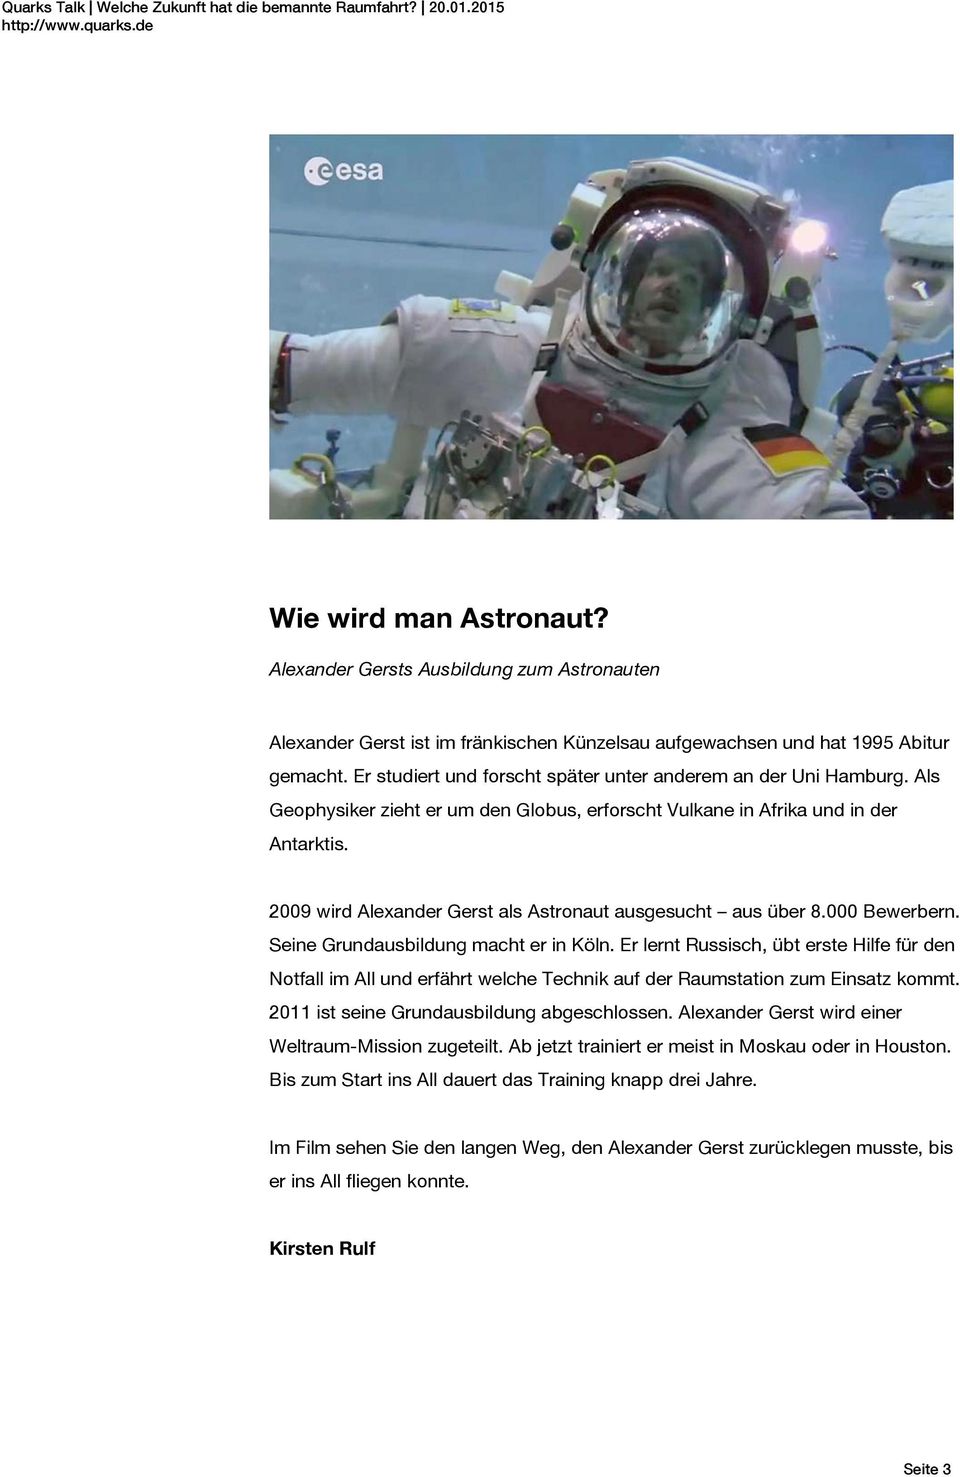 2009 wird Alexander Gerst als Astronaut ausgesucht aus über 8.000 Bewerbern. Seine Grundausbildung macht er in Köln.